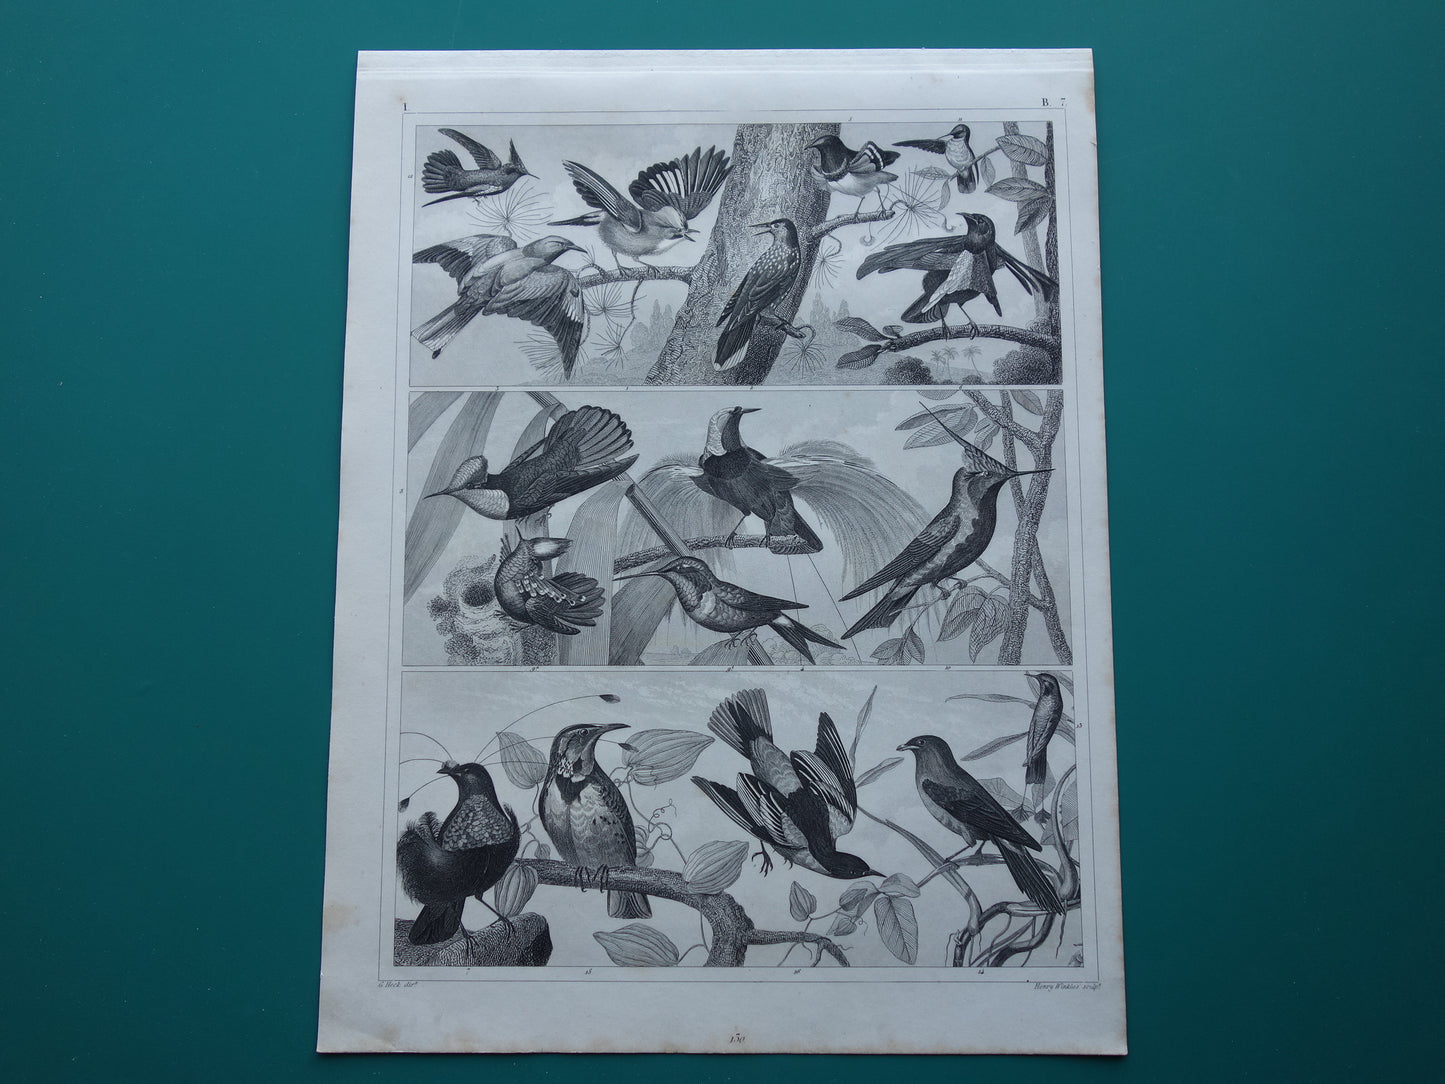 VOGELS Set van 3 oude vogel prenten Originele 175+ jaar oude vogel illustratie Drie vintage prints